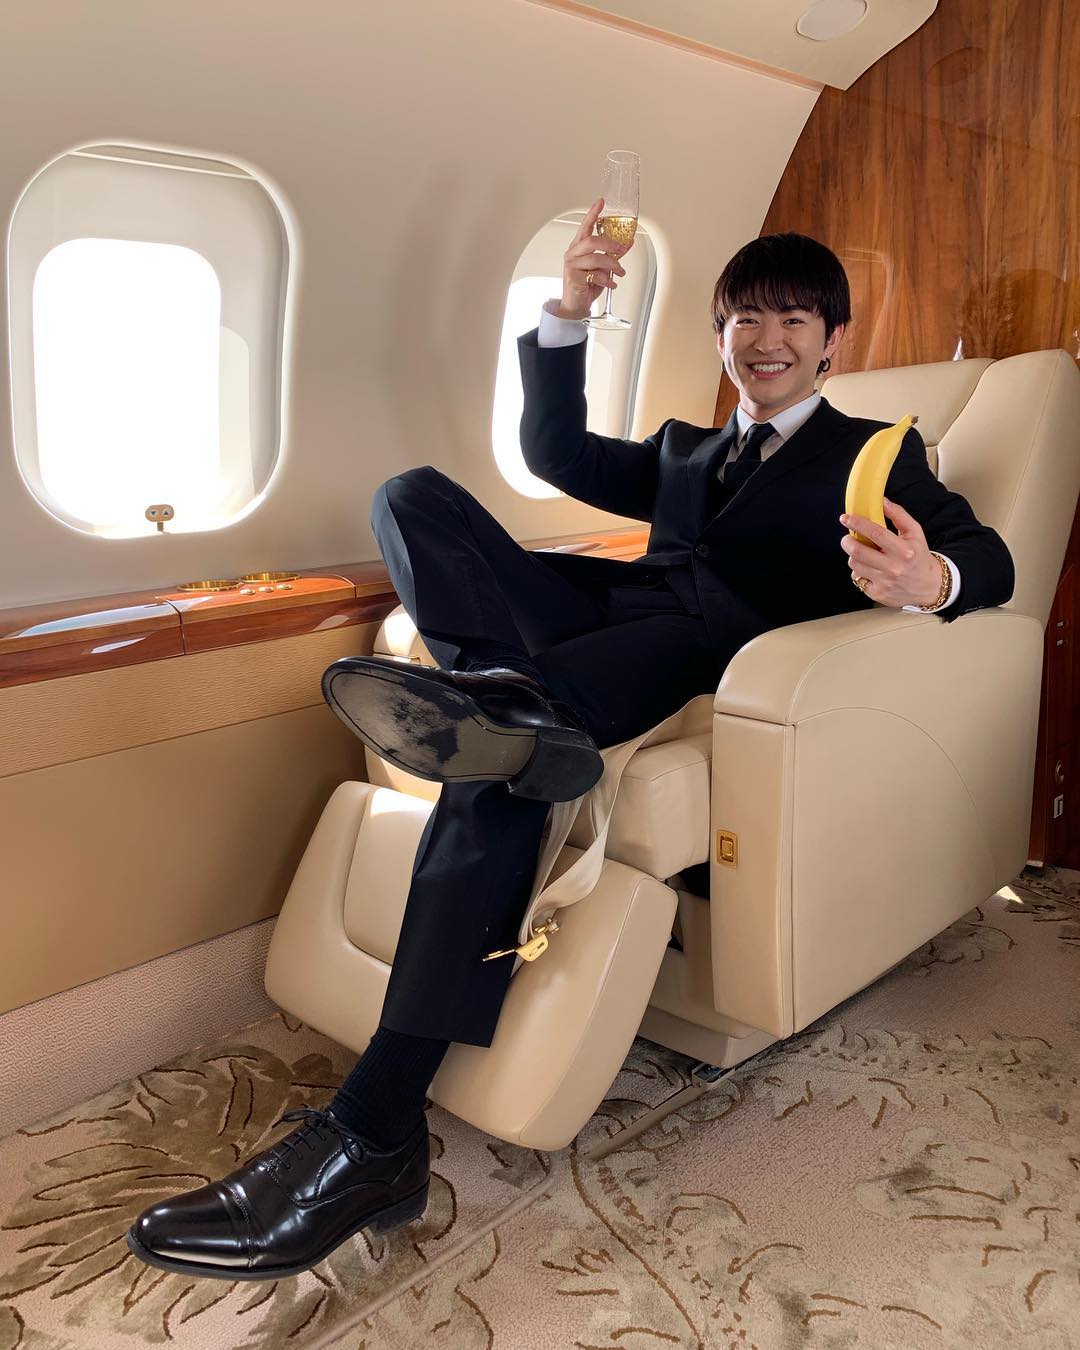 佐野玲於 はいはい ワロスワロス Private Jet Wacoca Japan People Life Style